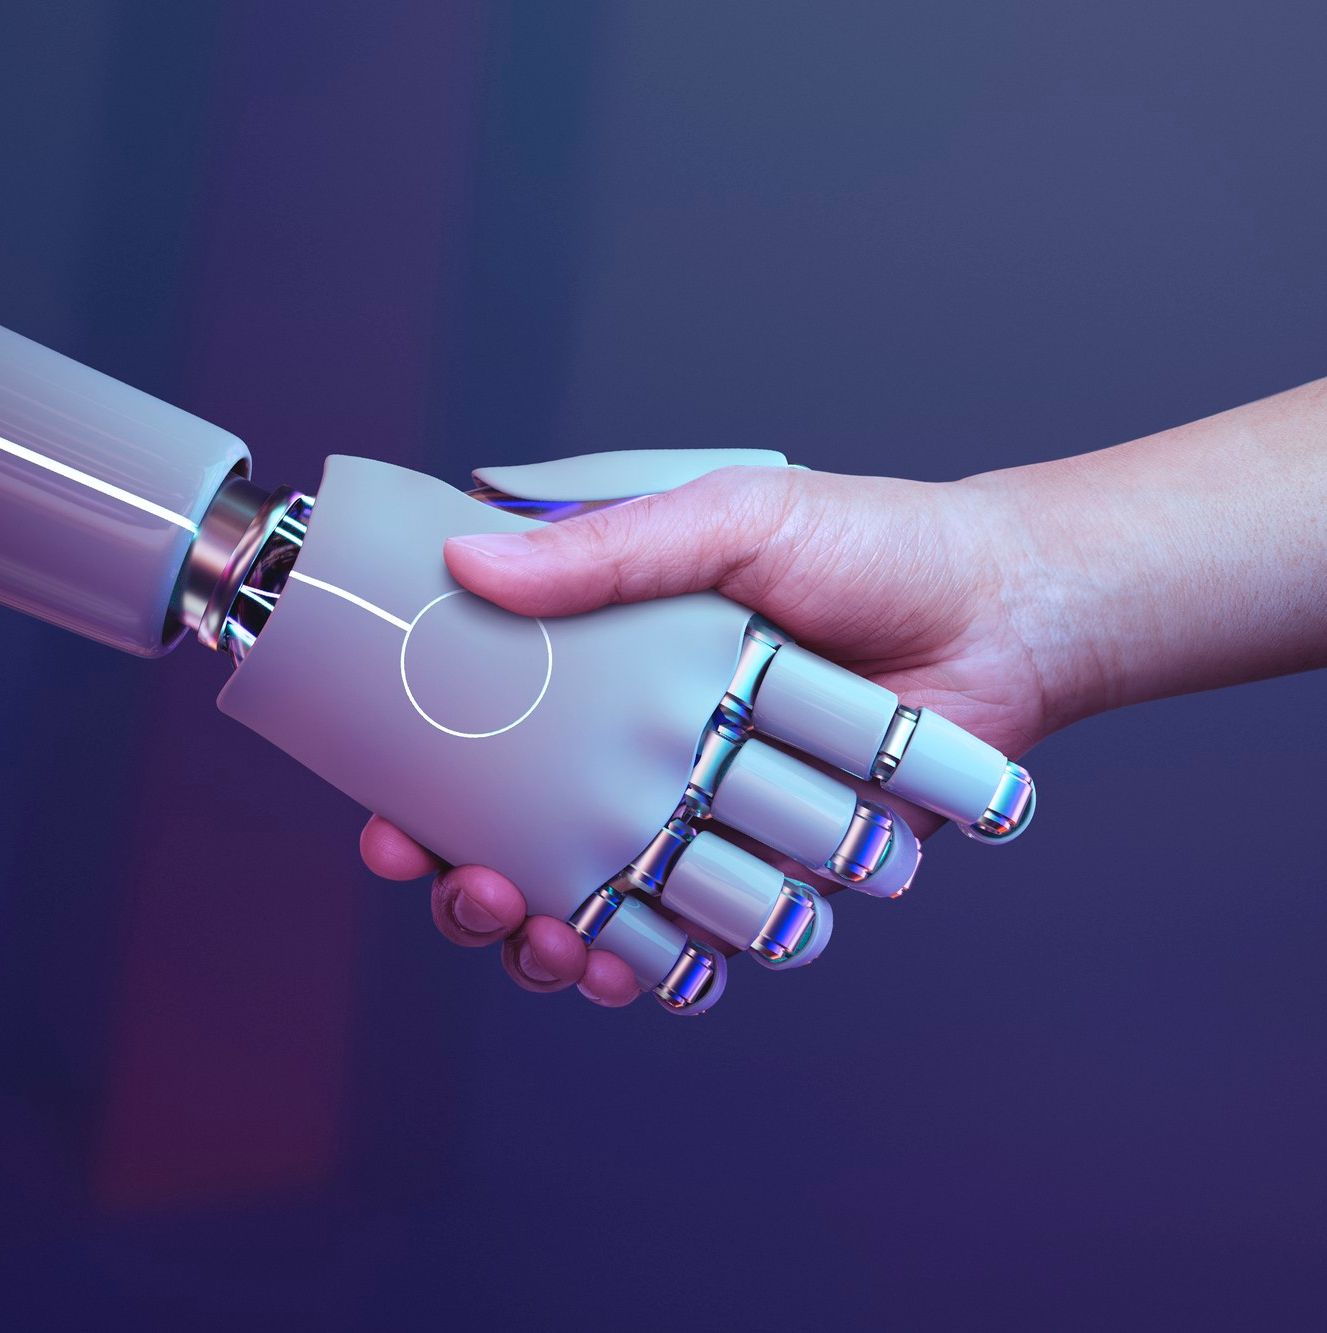 mens geeft robot een hand